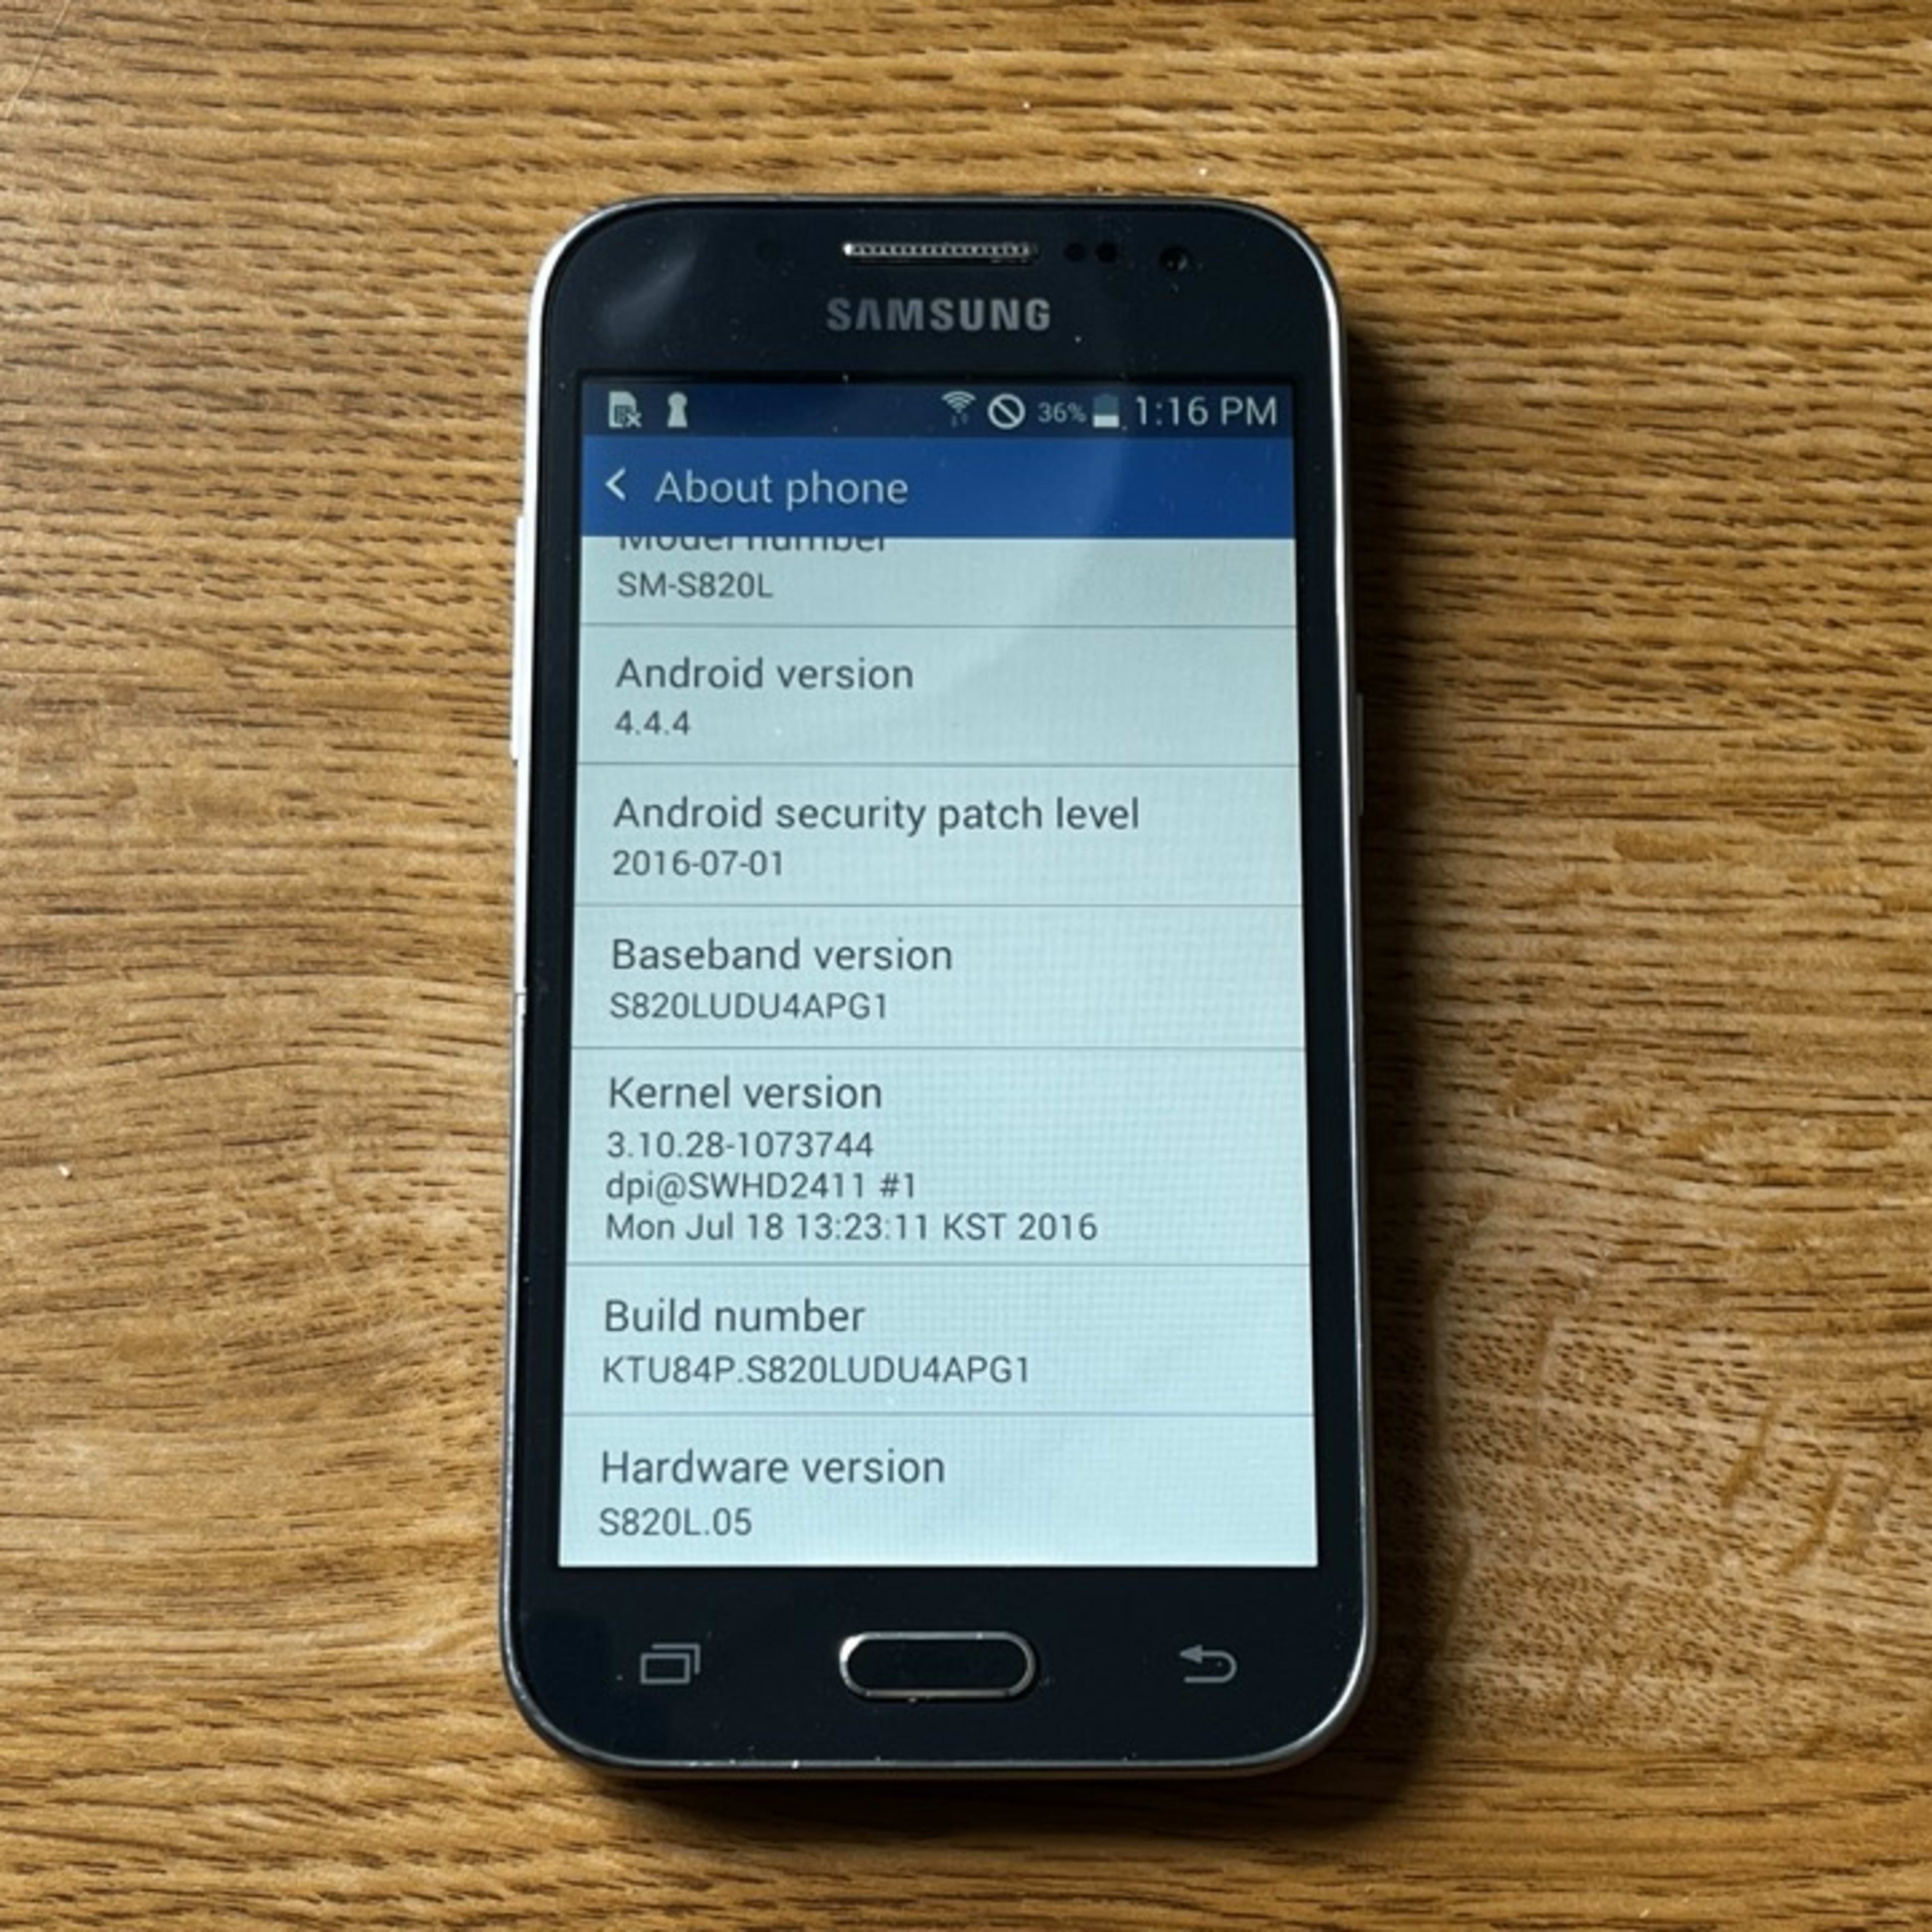 Samsung Galaxy Core Prime SM-S820L - TracFone Smartphone Device